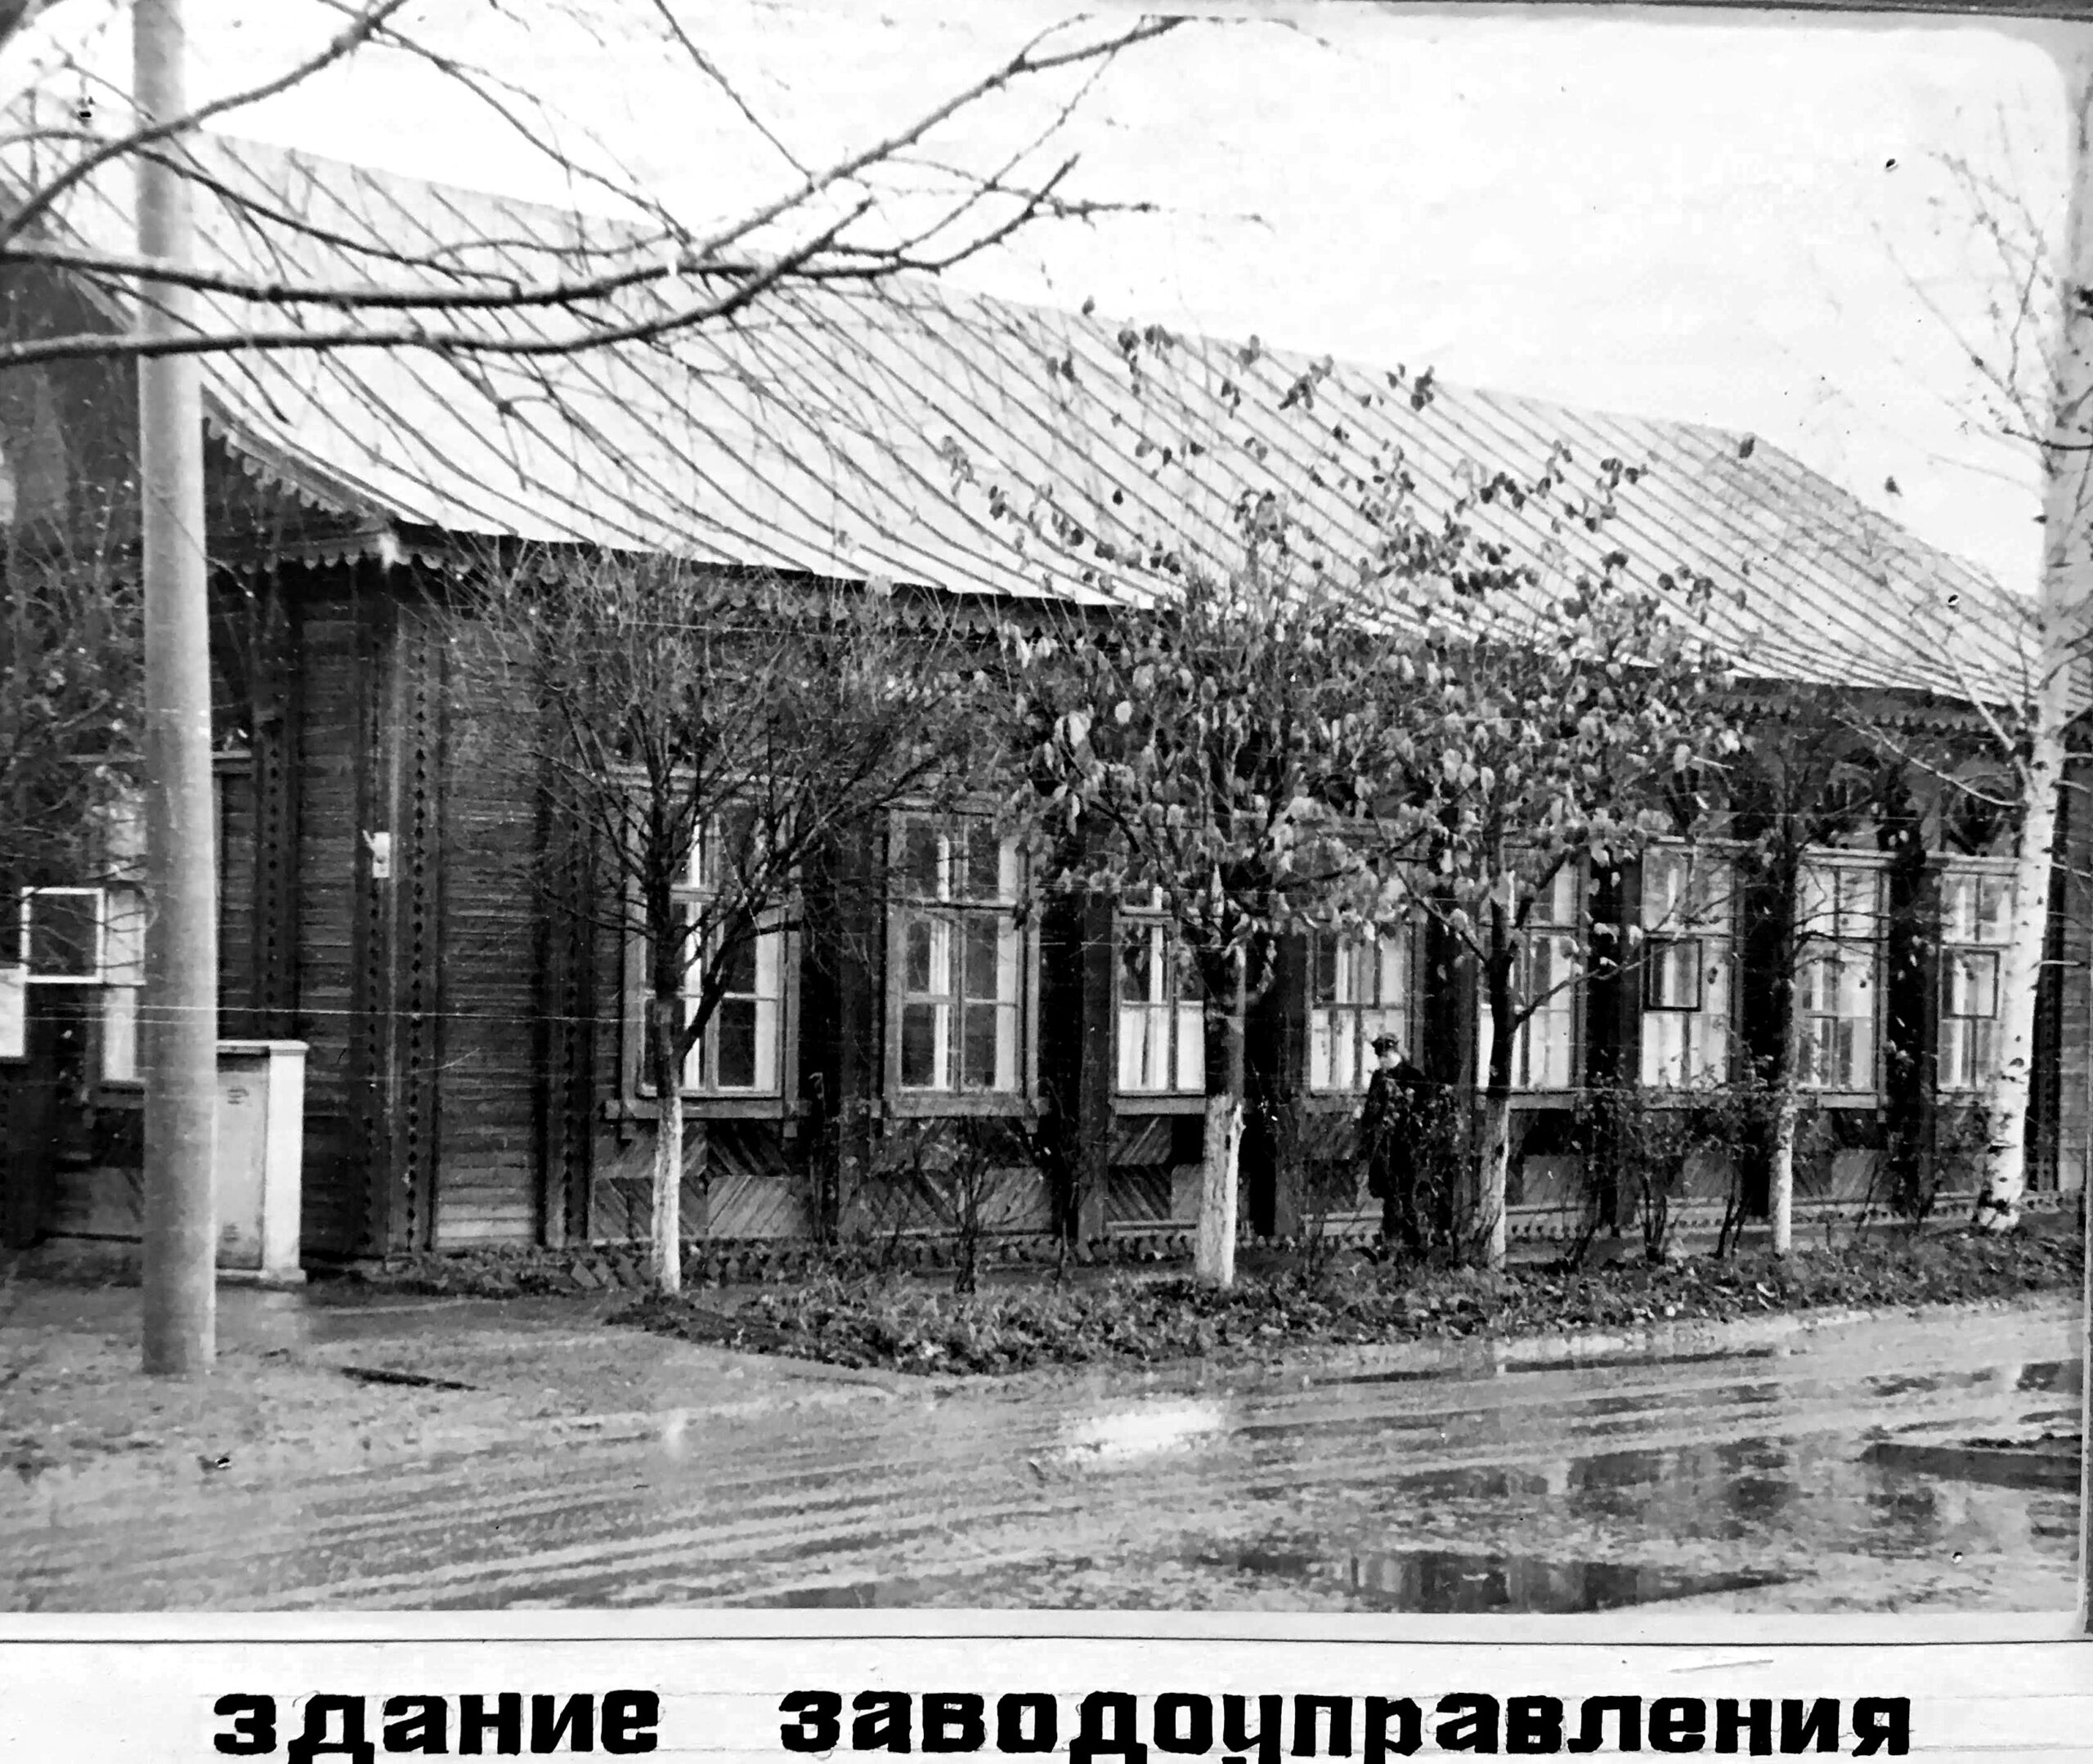 Здание заводоуправления з-да "Сельмаш" в Кирове (43-50г)